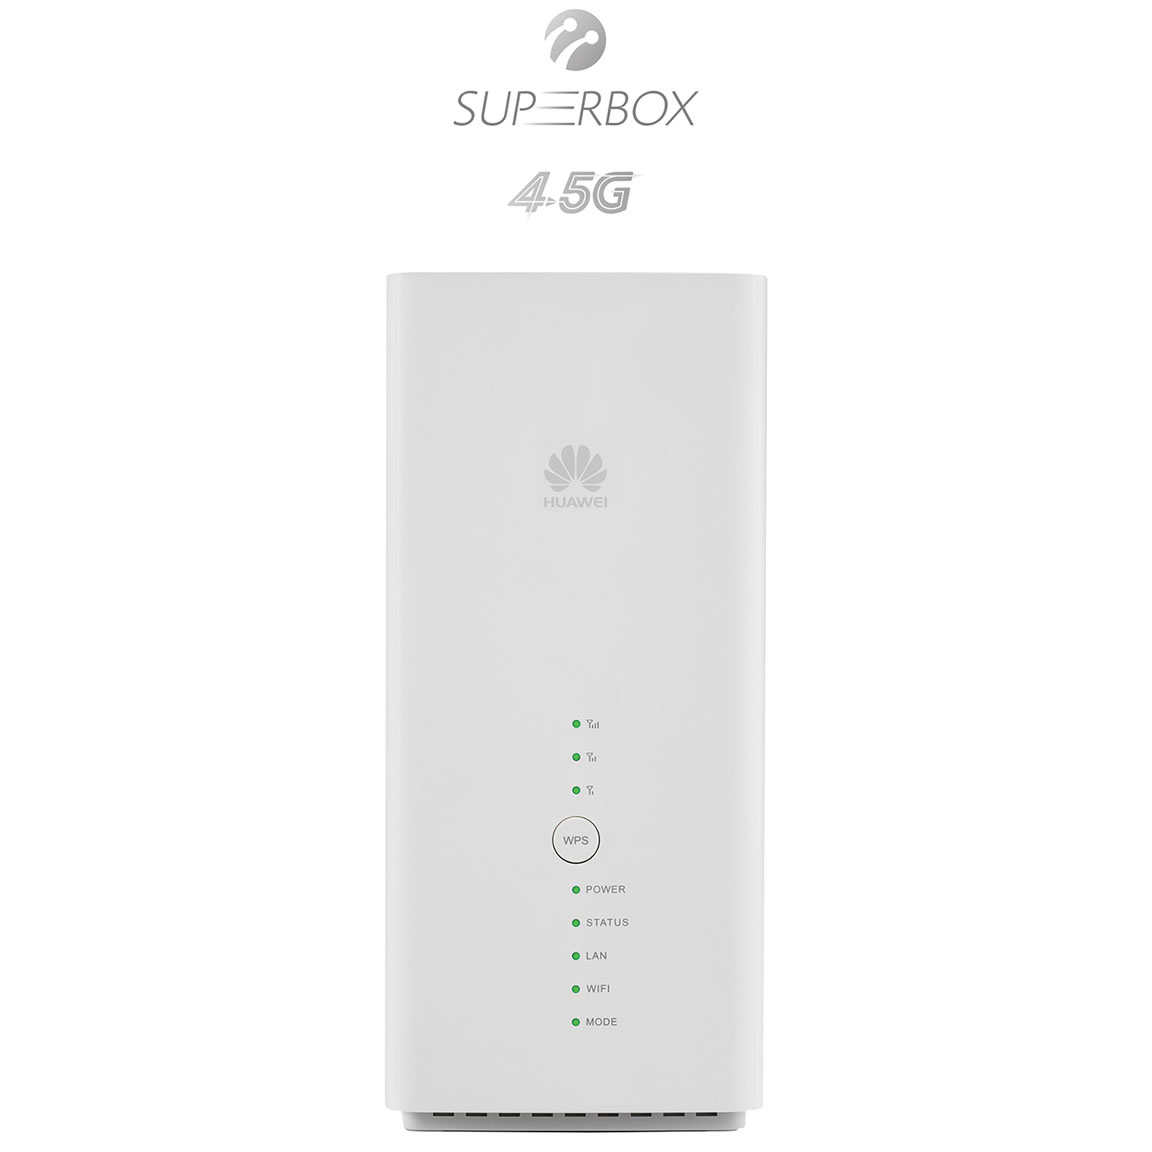 Turkcell SUPERBOX'la evlere özel 4.5G hızında internet geliyor